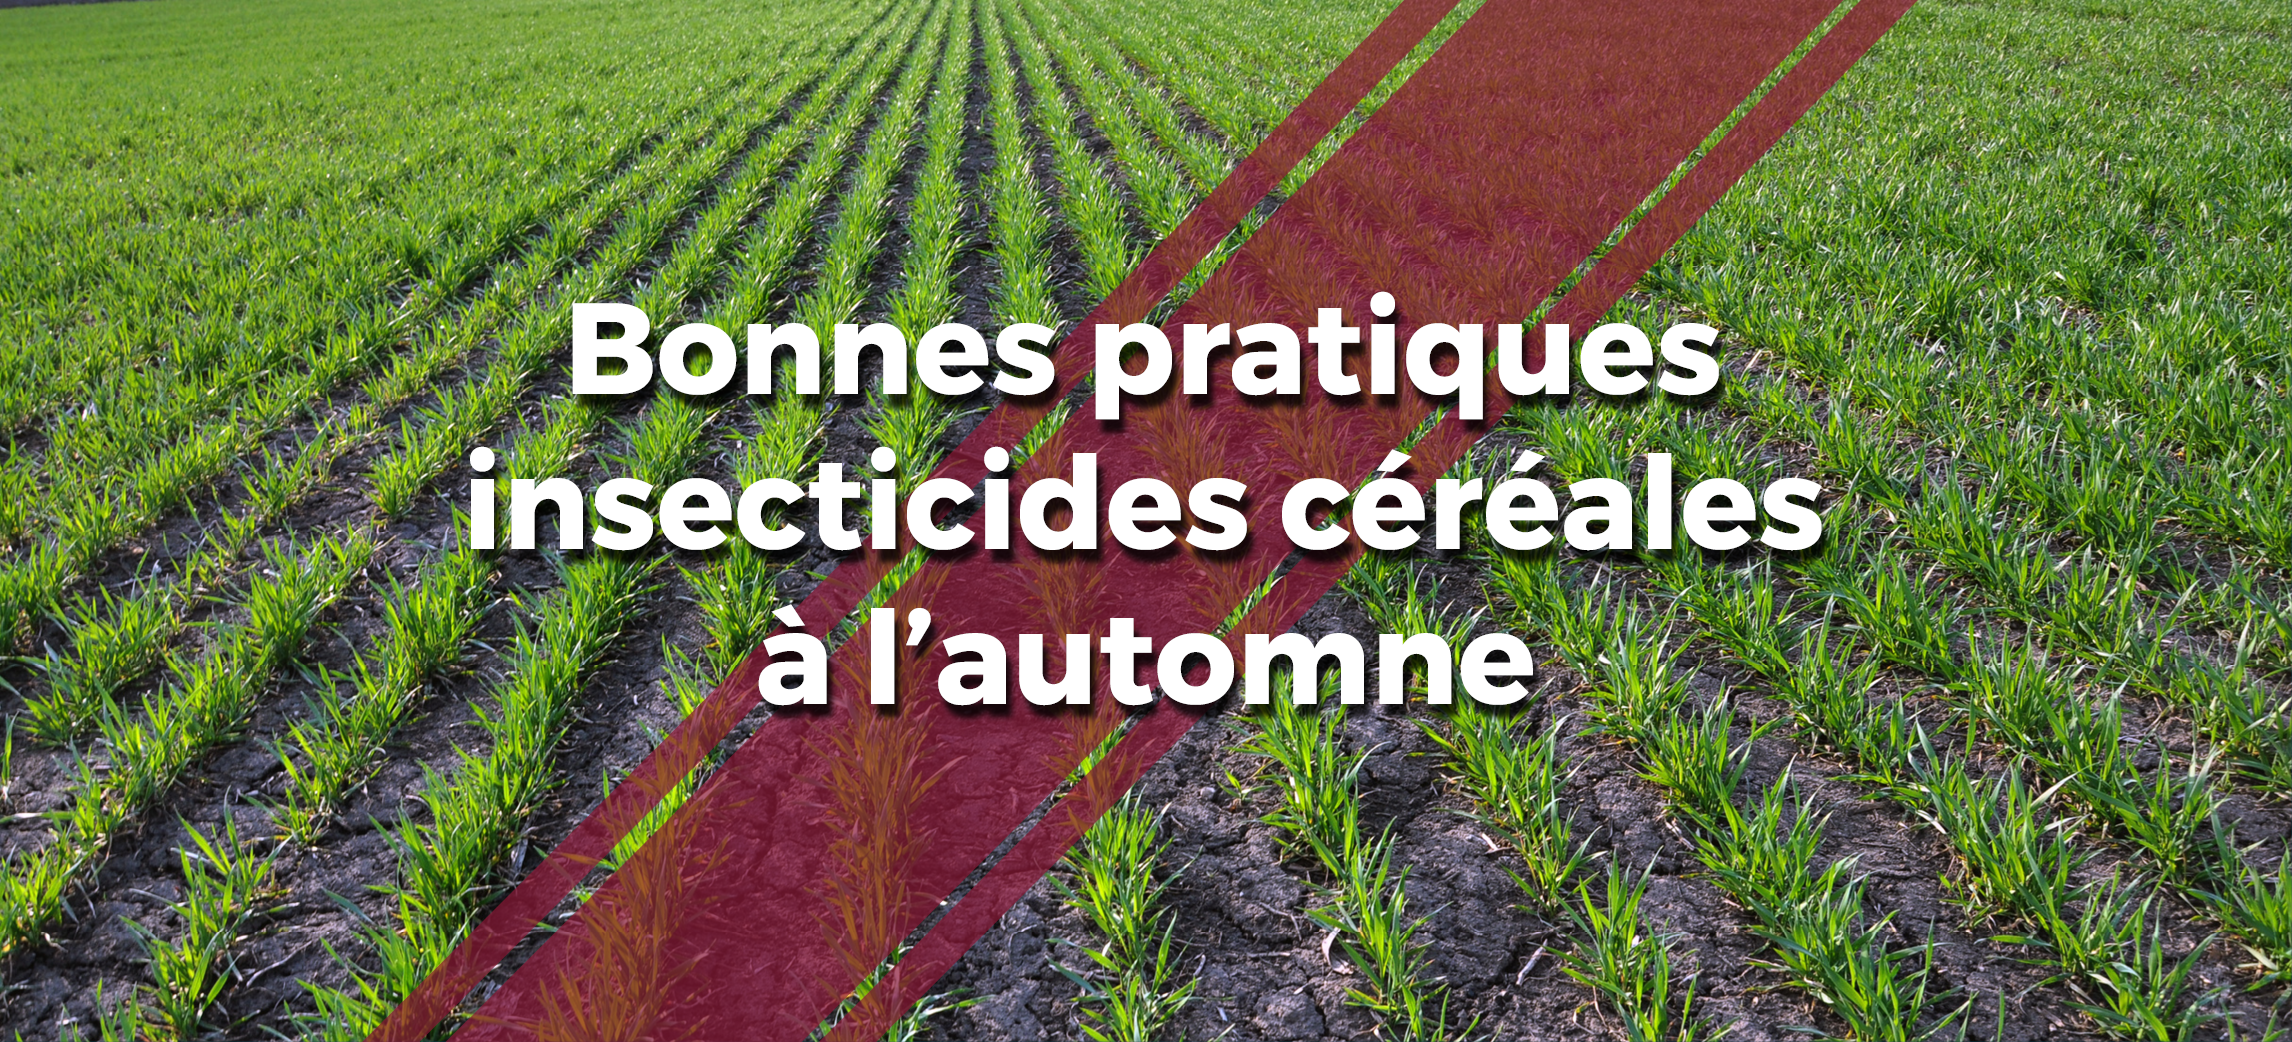 Un montage photo d'une parcelle de blé à l'automne avec un logo et le texte  "Bonnes pratiques insecticides céréales à l'automne"